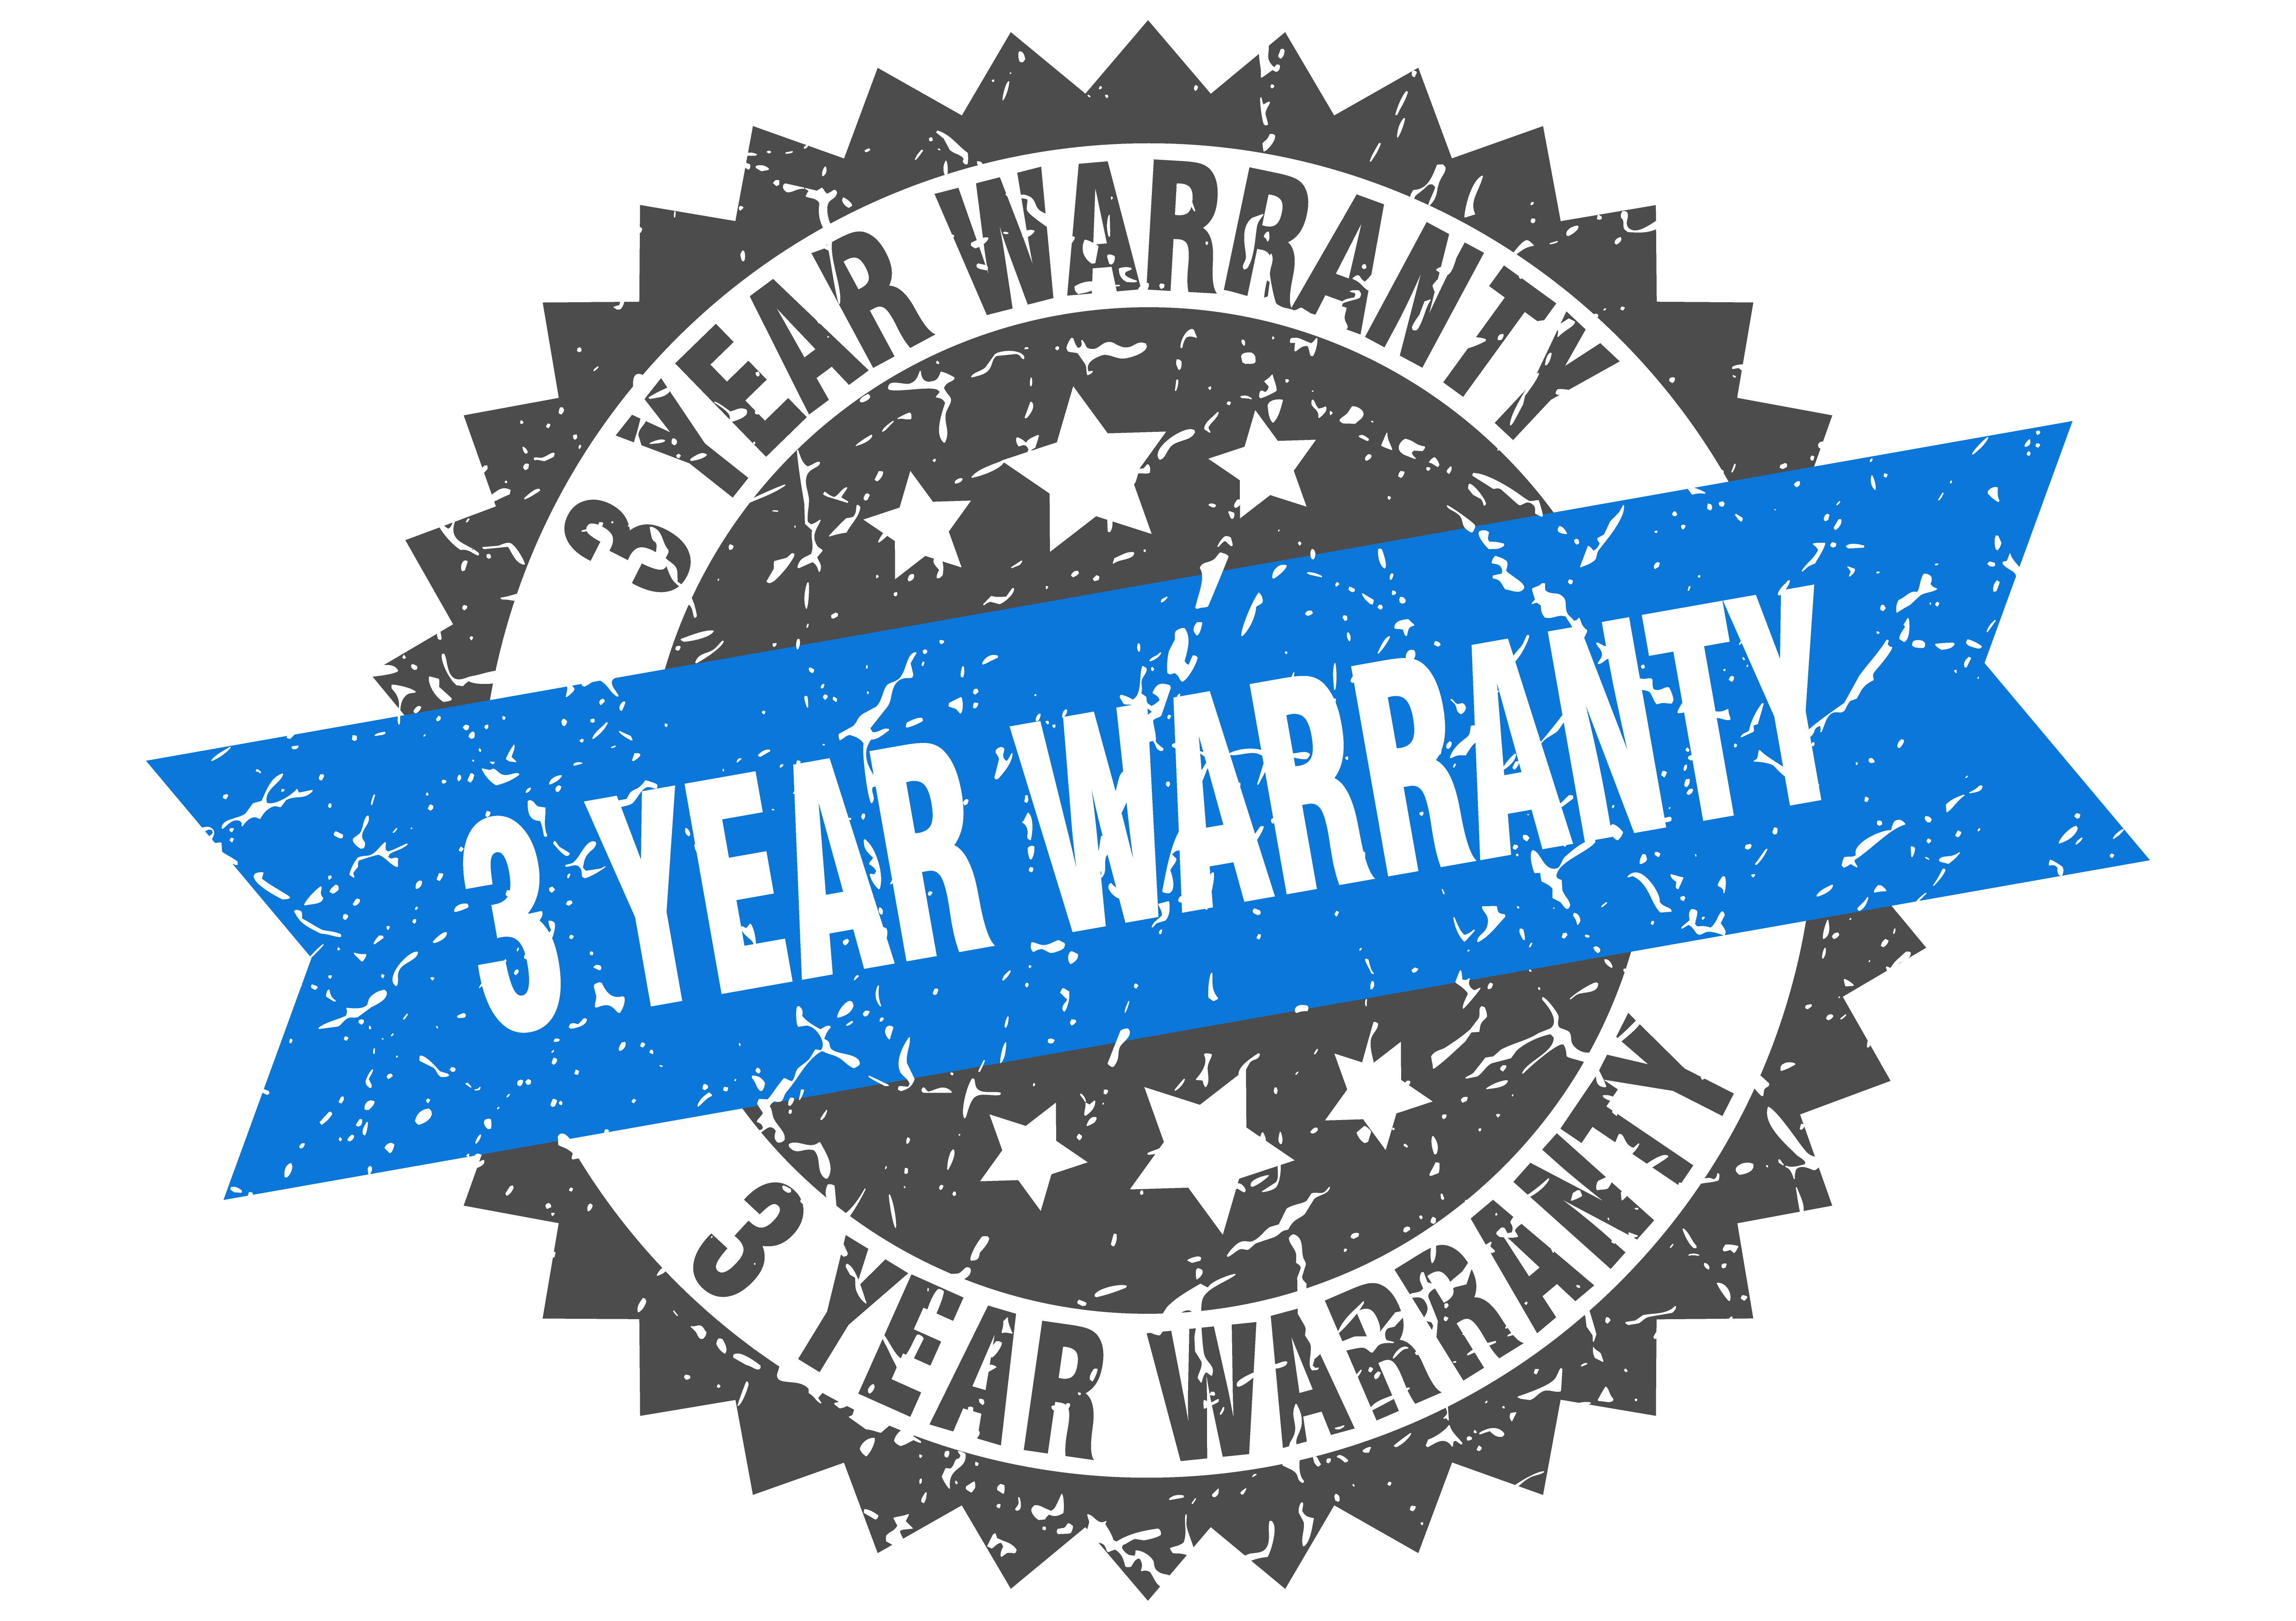 3-year warranty symbol